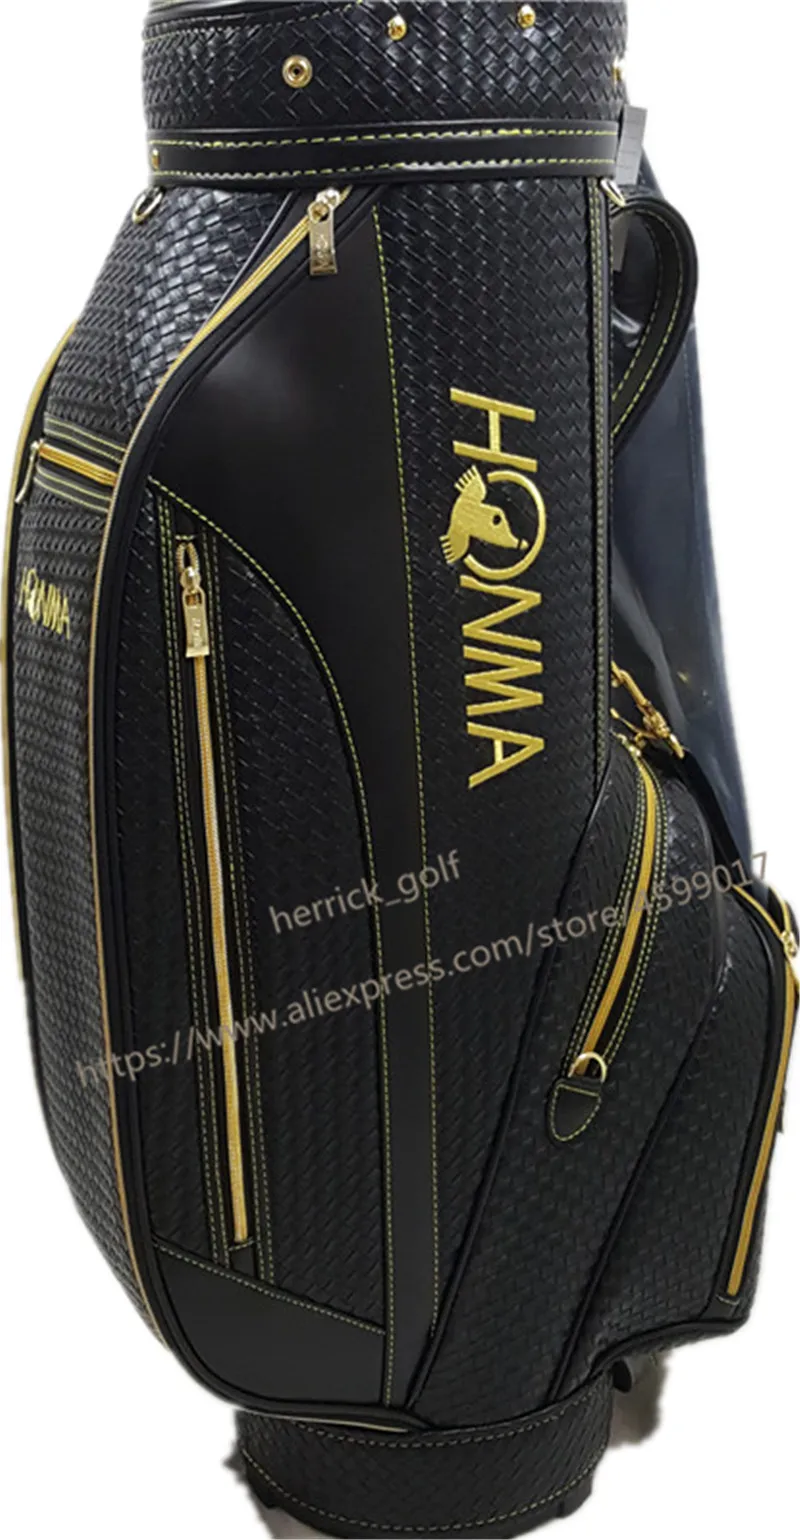 Новый гольф клуб Хонма S-06 4 звезды полный клюшки для гольфа драйвер + Фервей древесина Утюги клюшки графит вал Обложка сумка